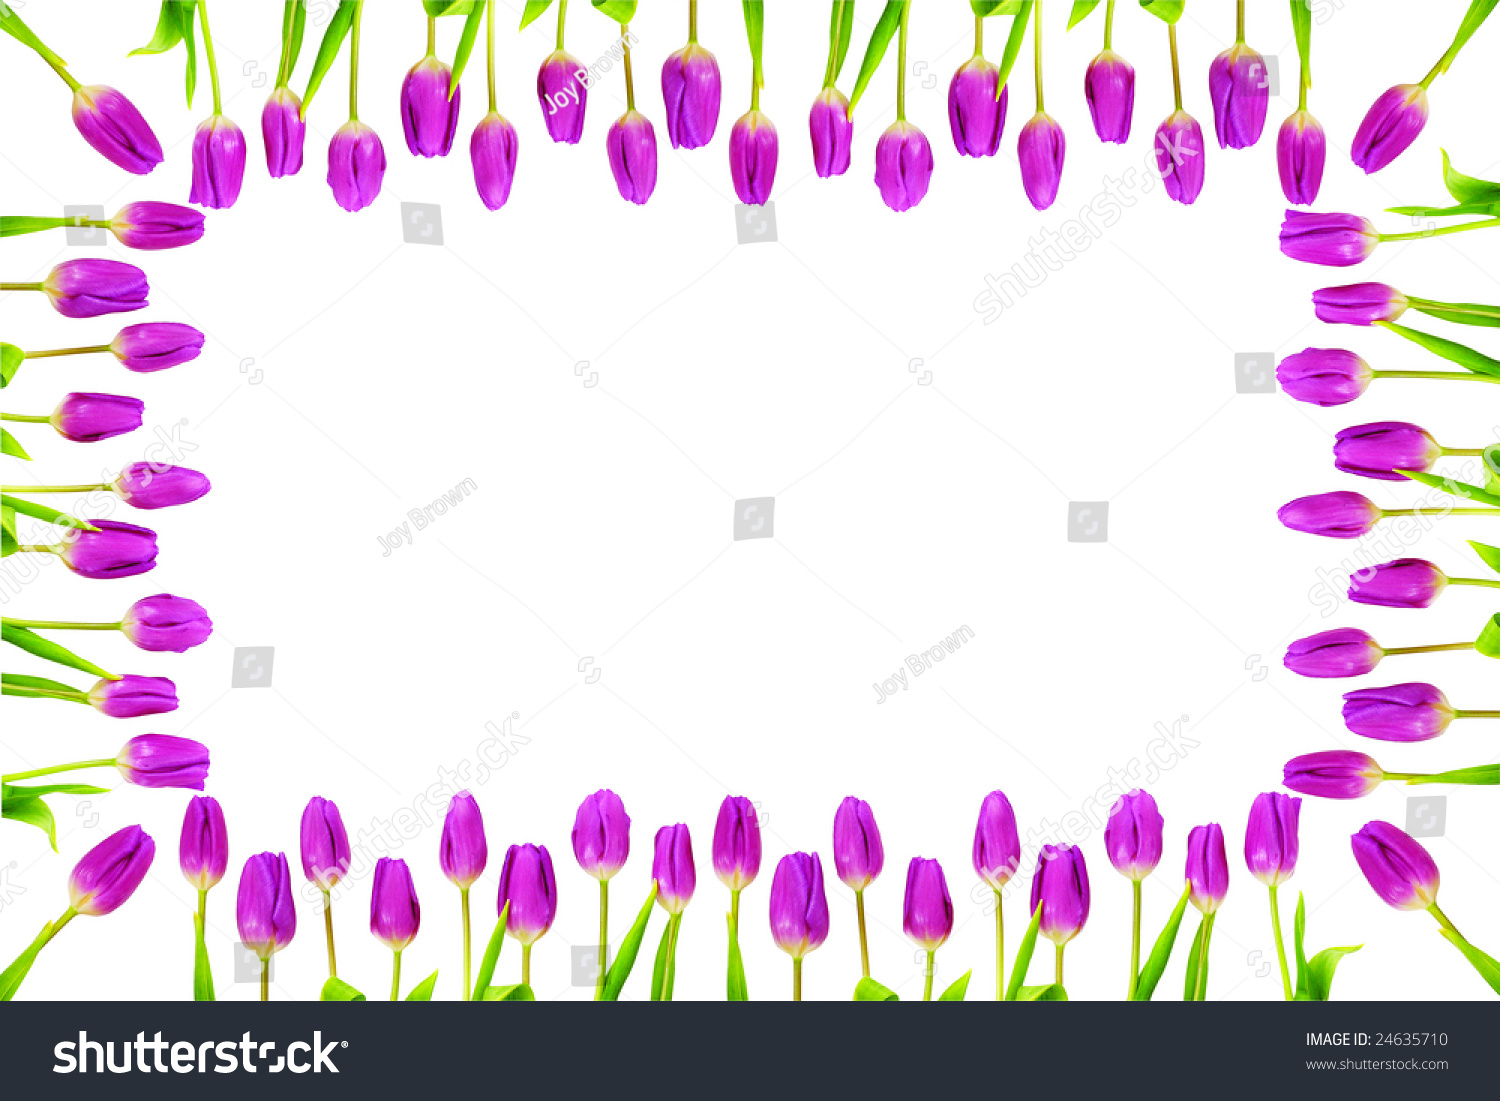 Tulip Frame Border Stock Photo 24635710 - Shutterstock